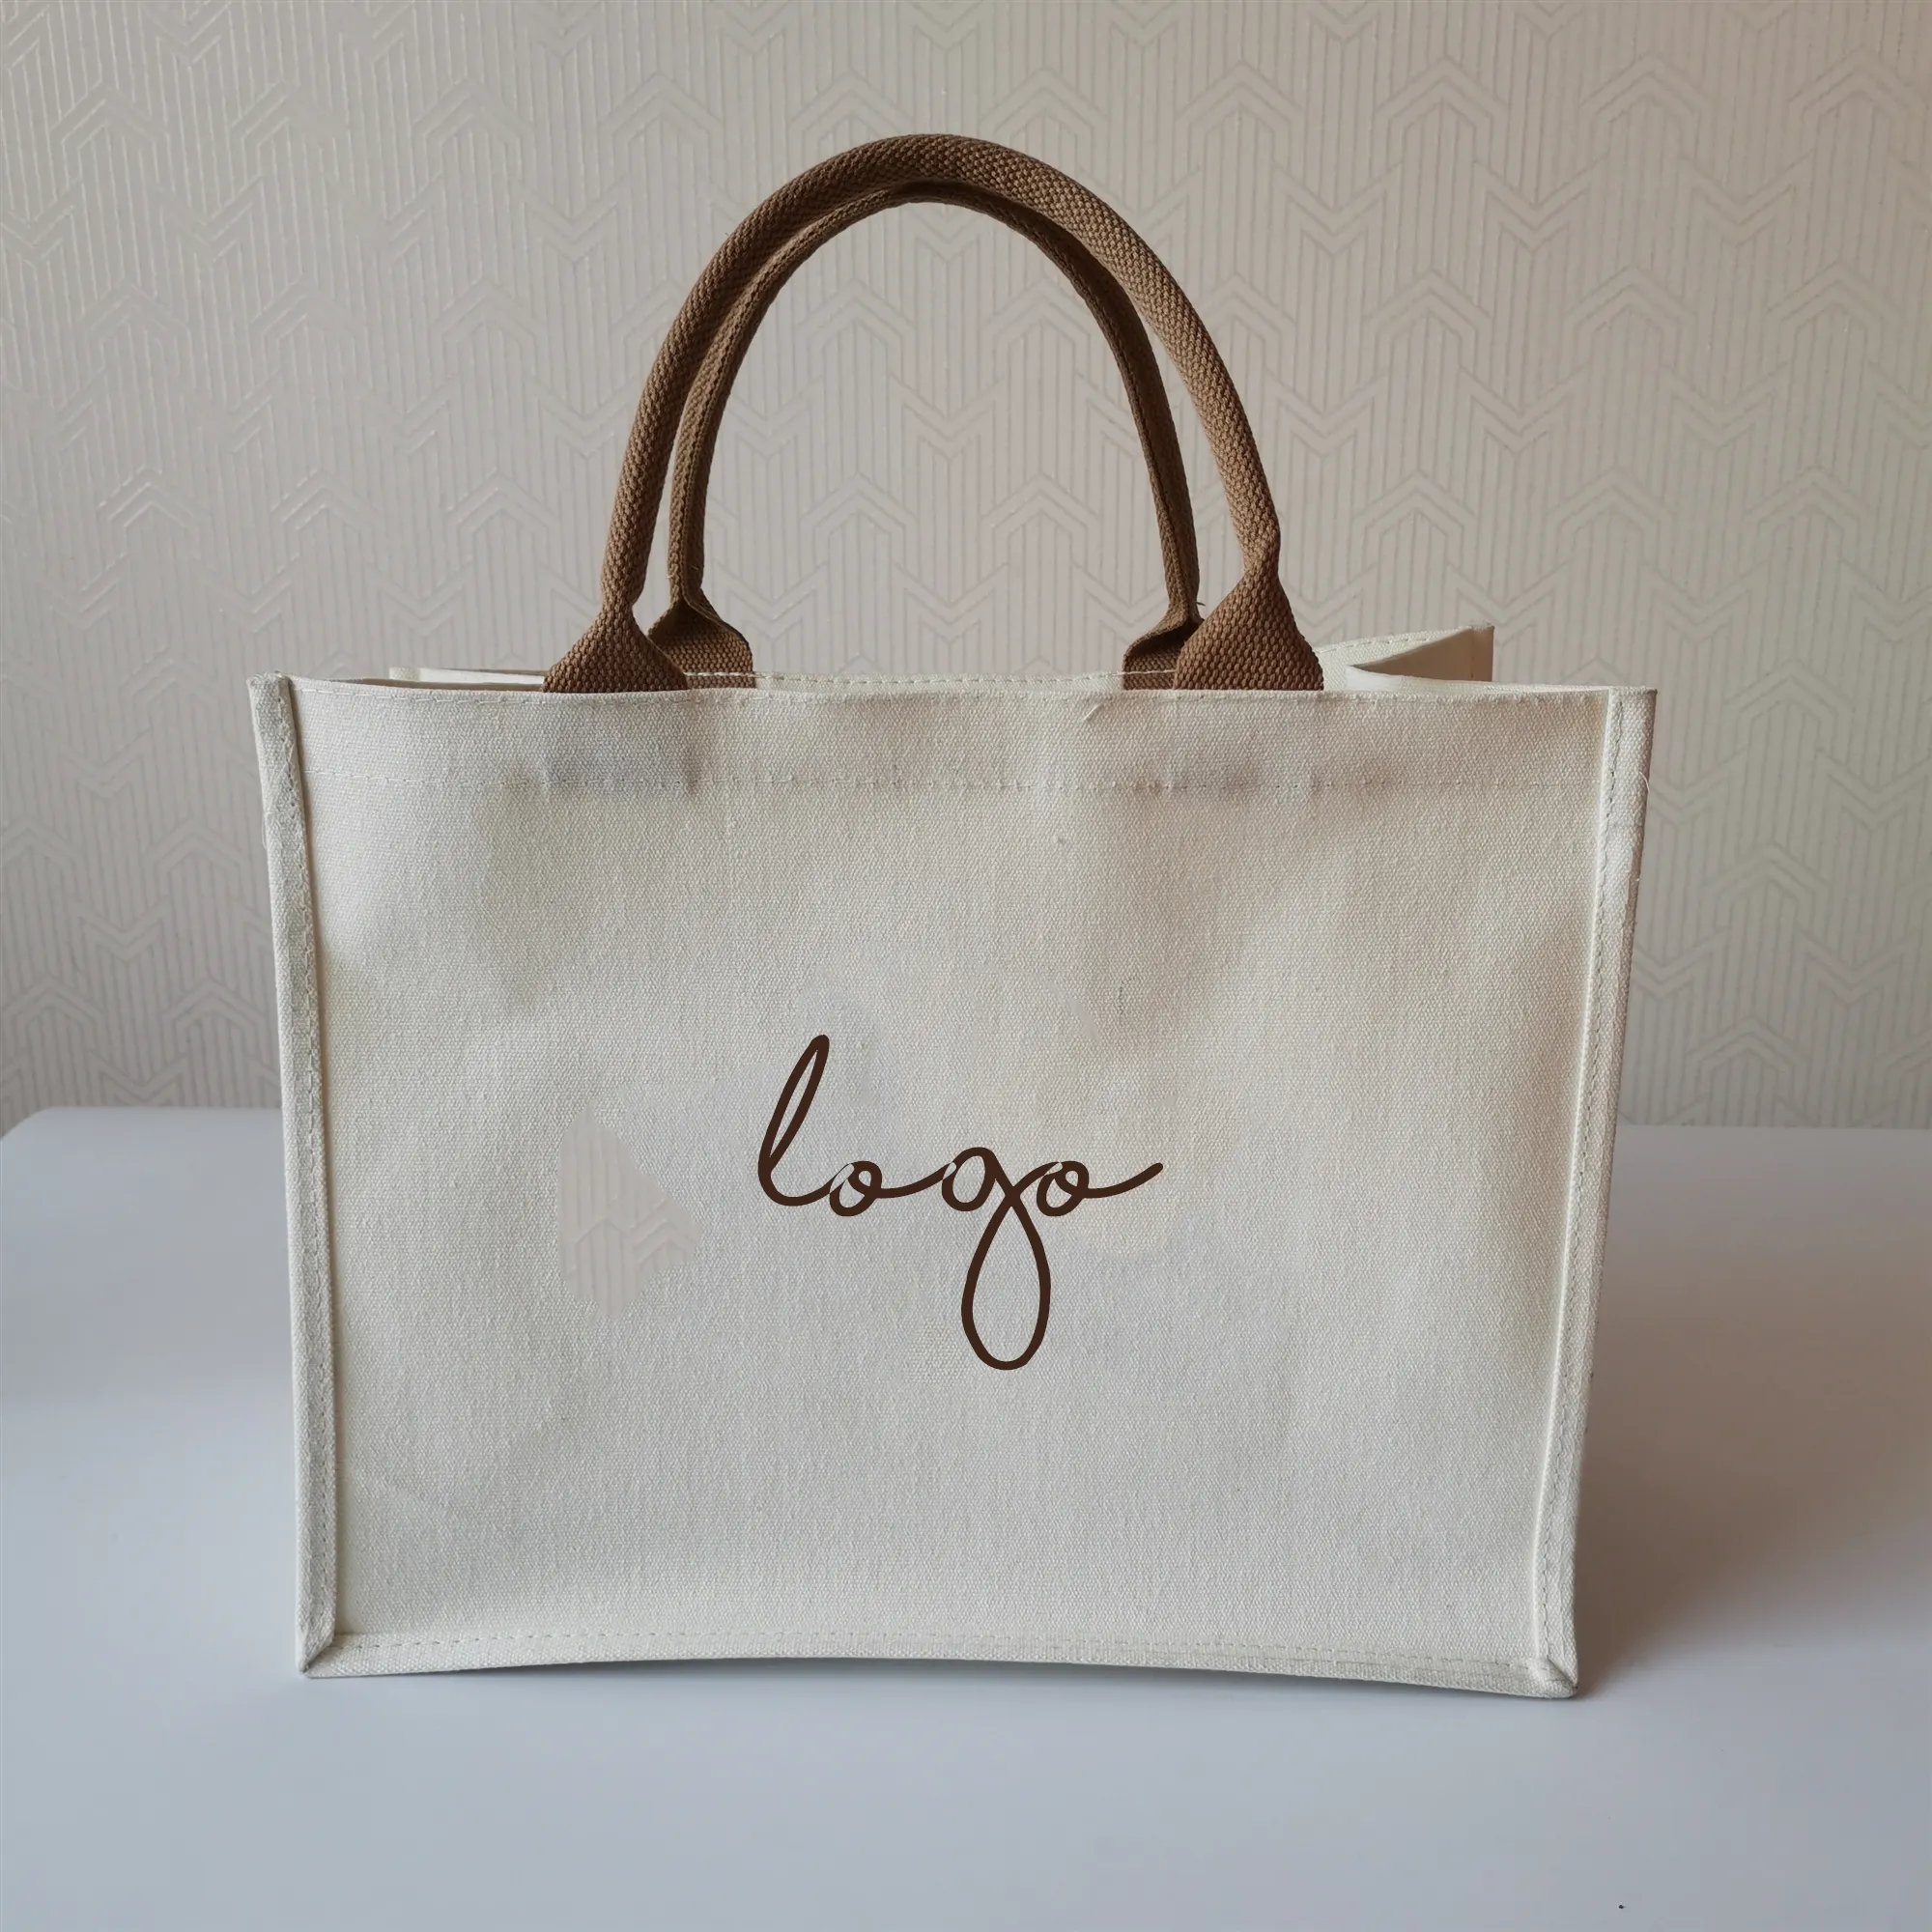 Bolsa de mano de algodón para compras, bolsa de mano de lona impermeable laminada con forma cuadrada y logotipo personalizado ecológico, con mango de color